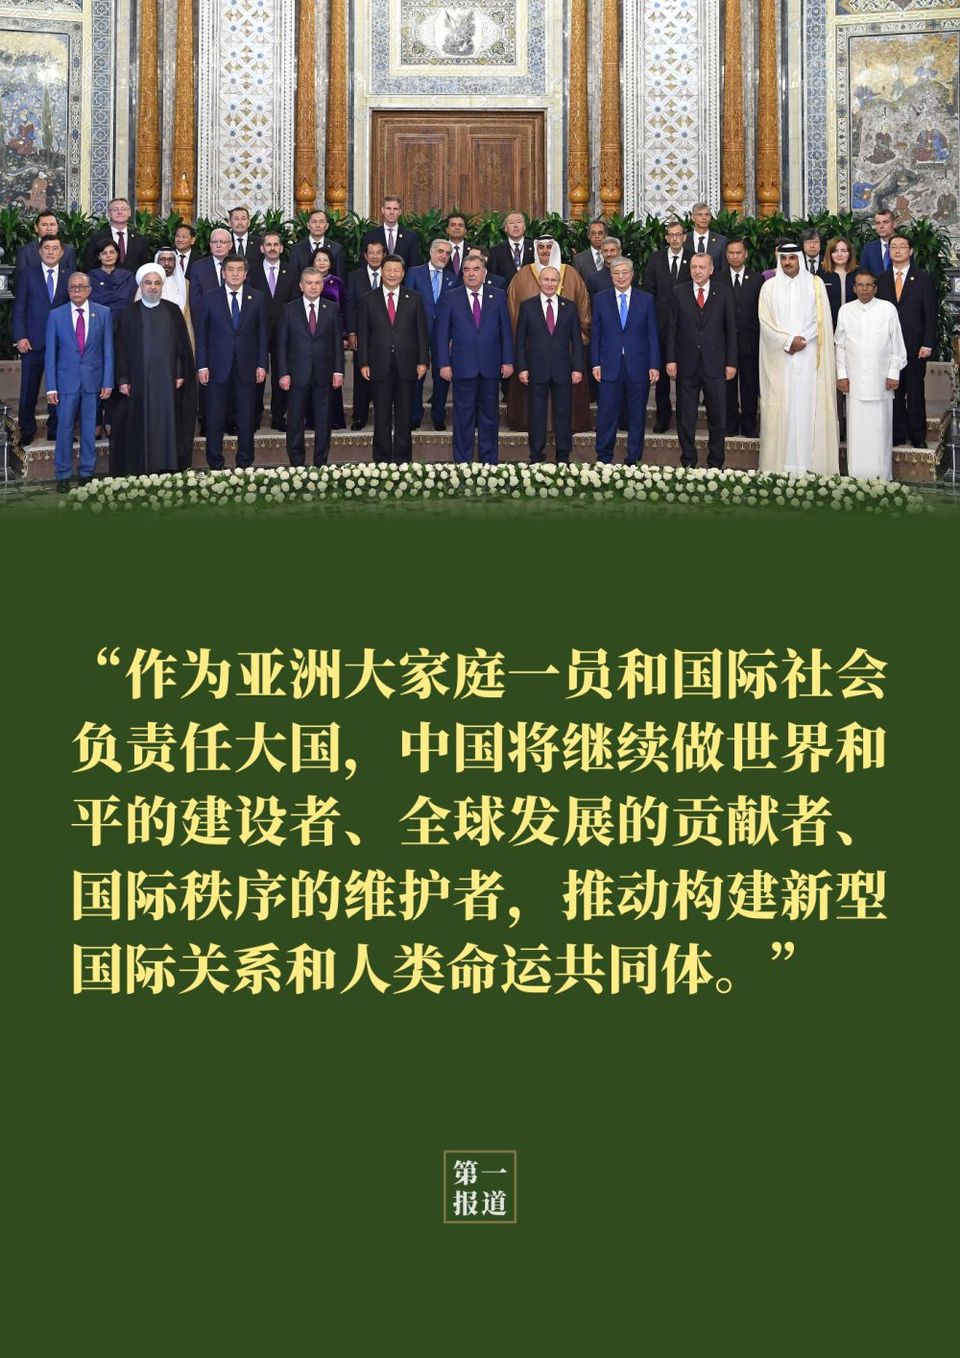 中国一共有多少个主席图片